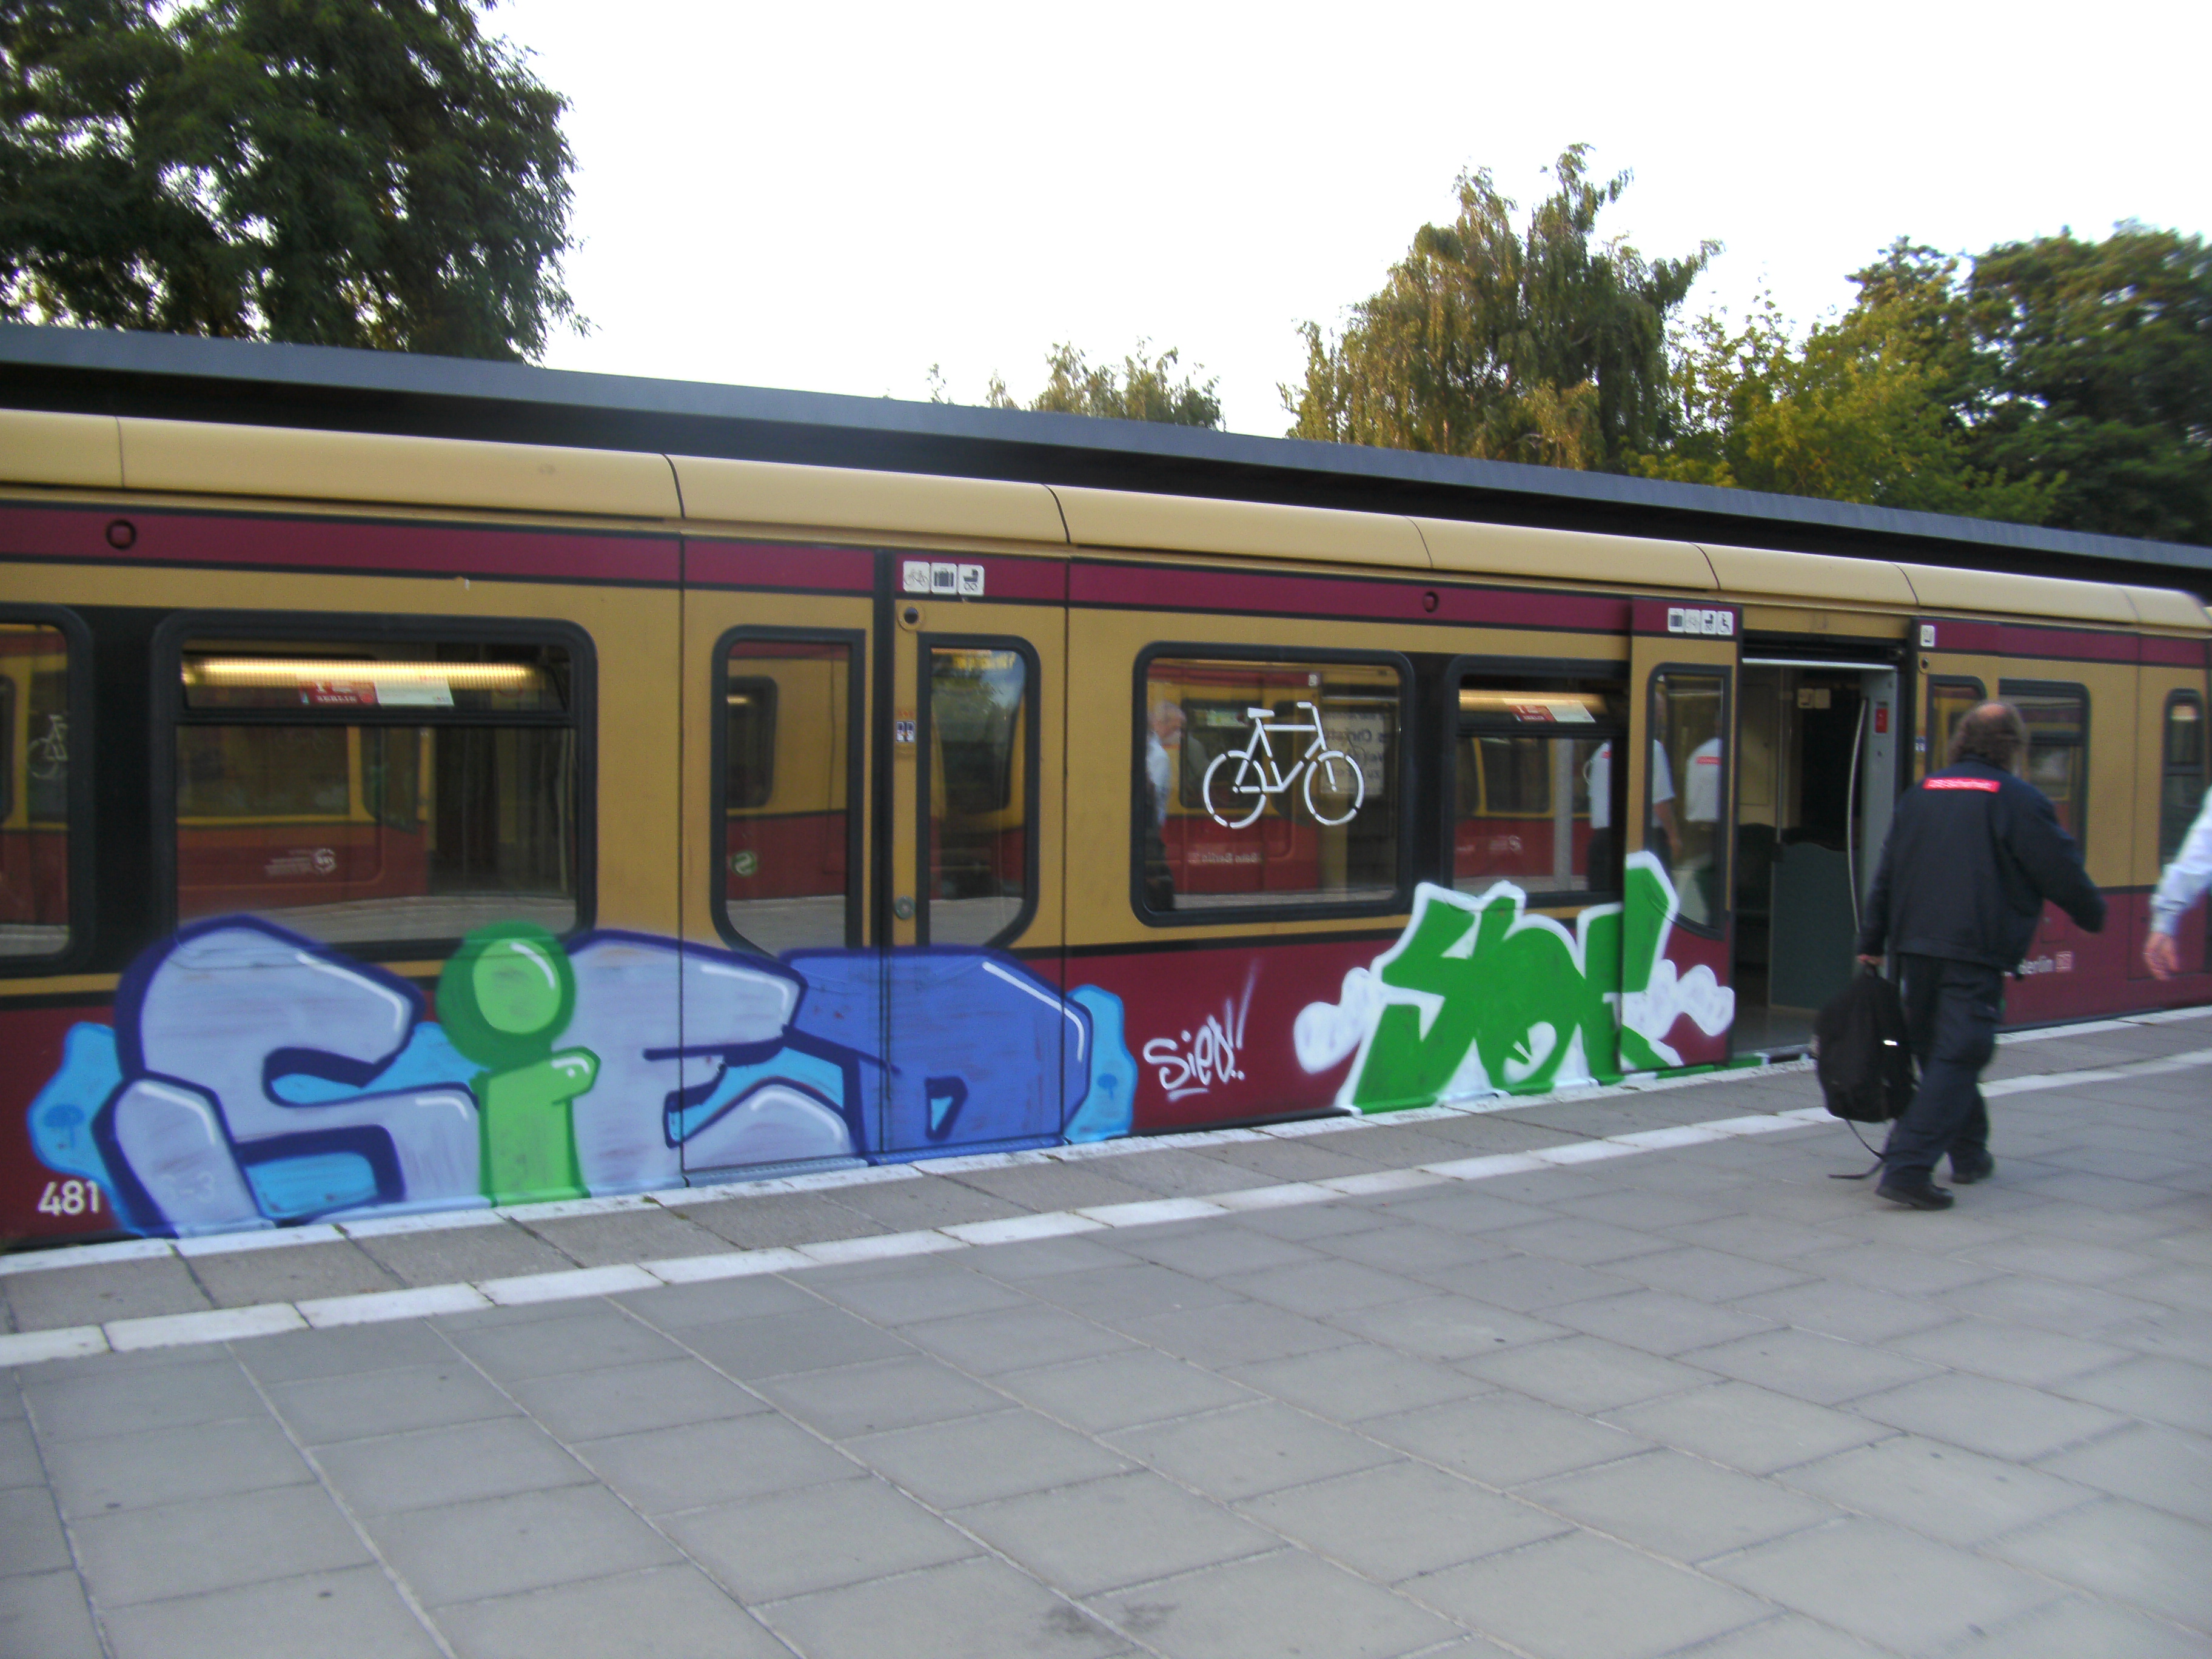 BERLIN GRAFFITI TRAINWRITING #61 - Hustlehorst Berlin Trains